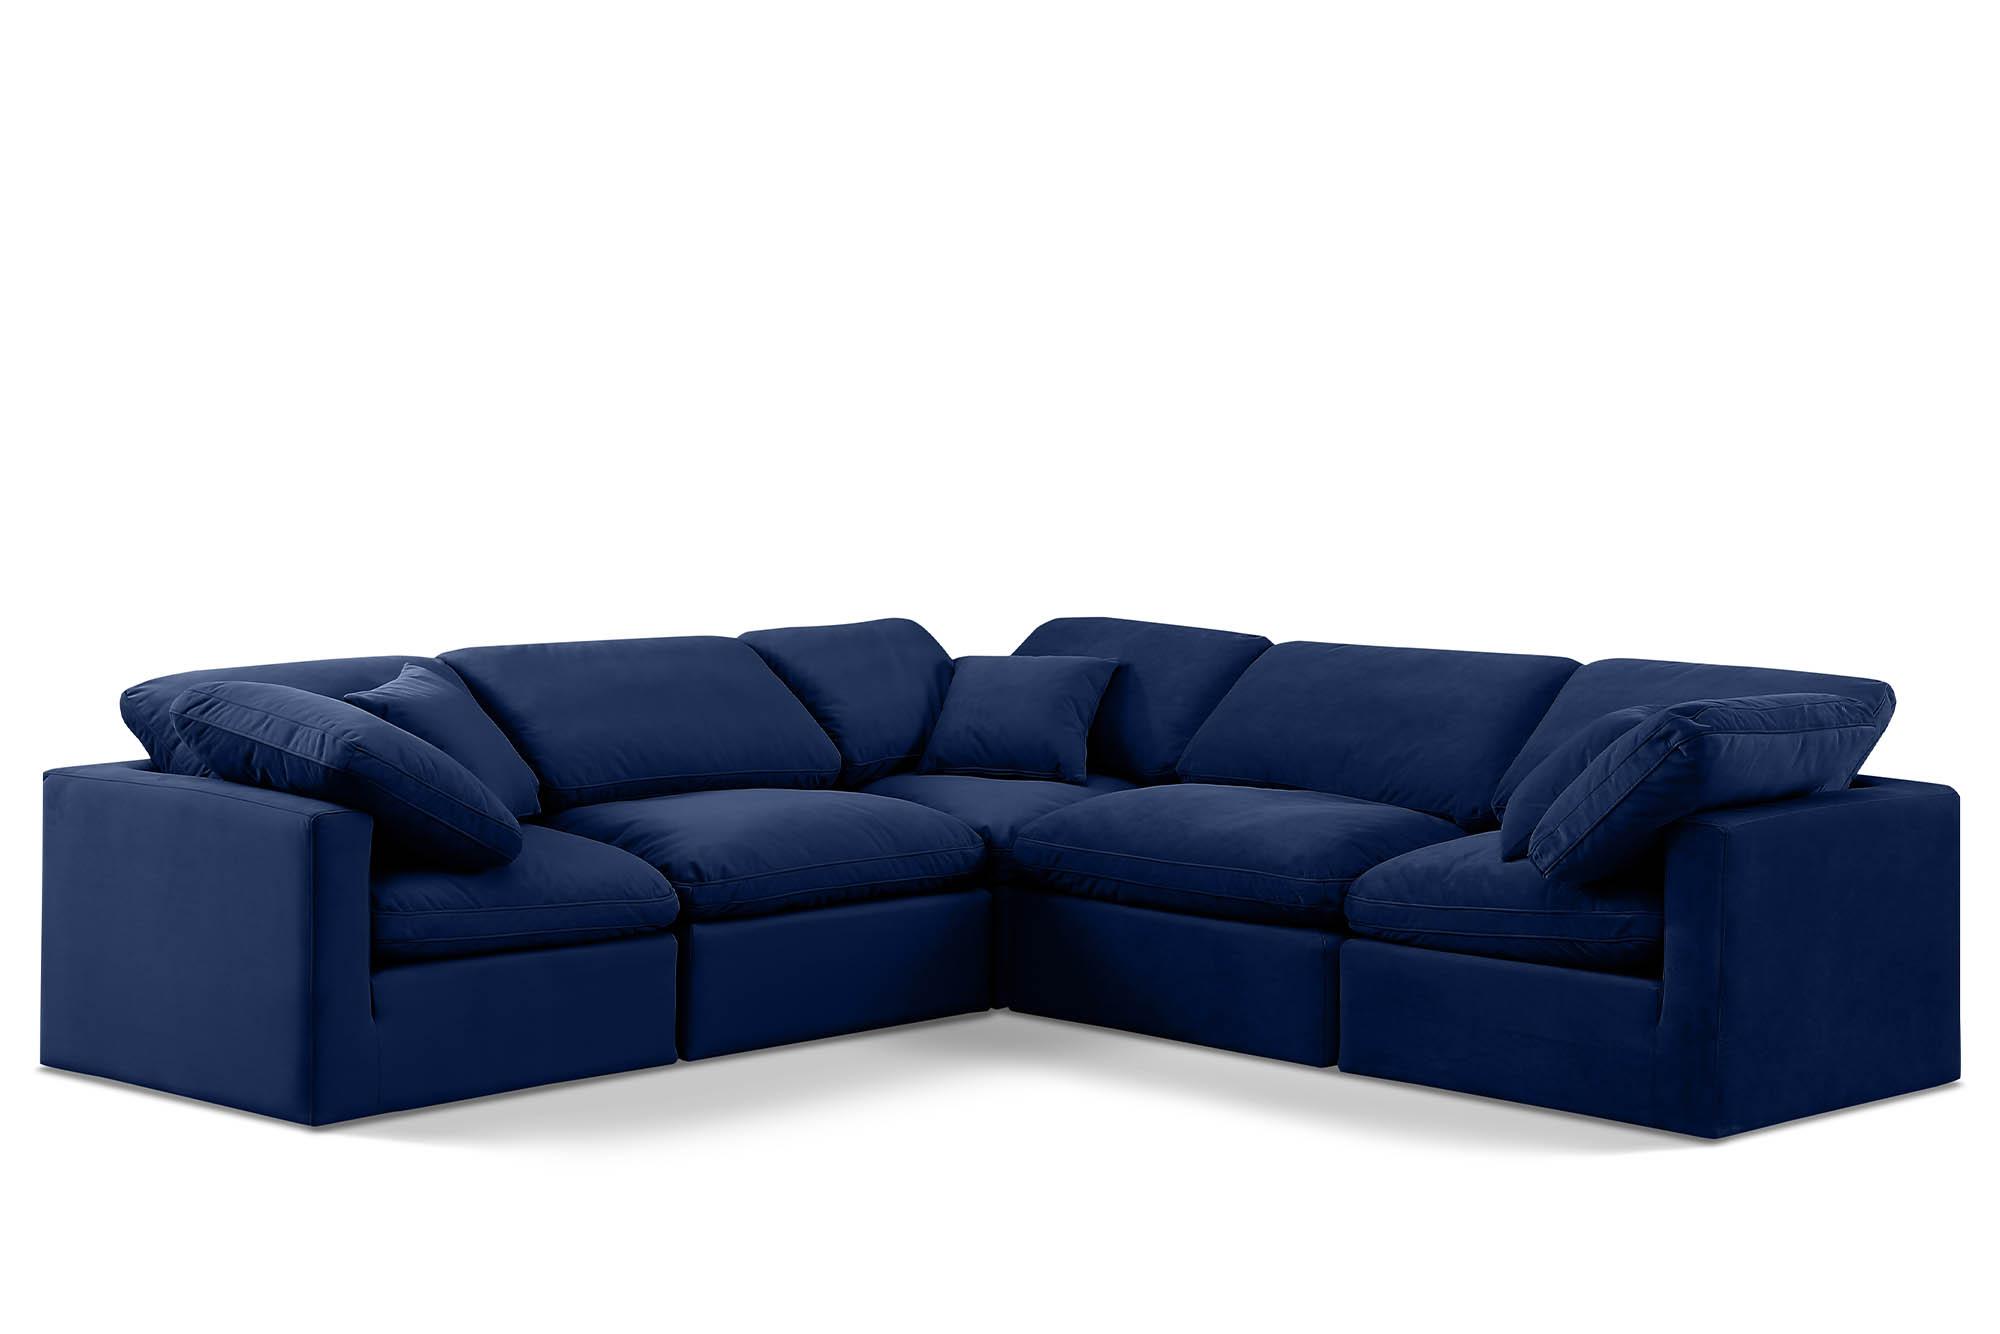 Contemporary, Modern Modular Sectional Sofa INDULGE 147Navy-Sec5C 147Navy-Sec5C in Navy Velvet